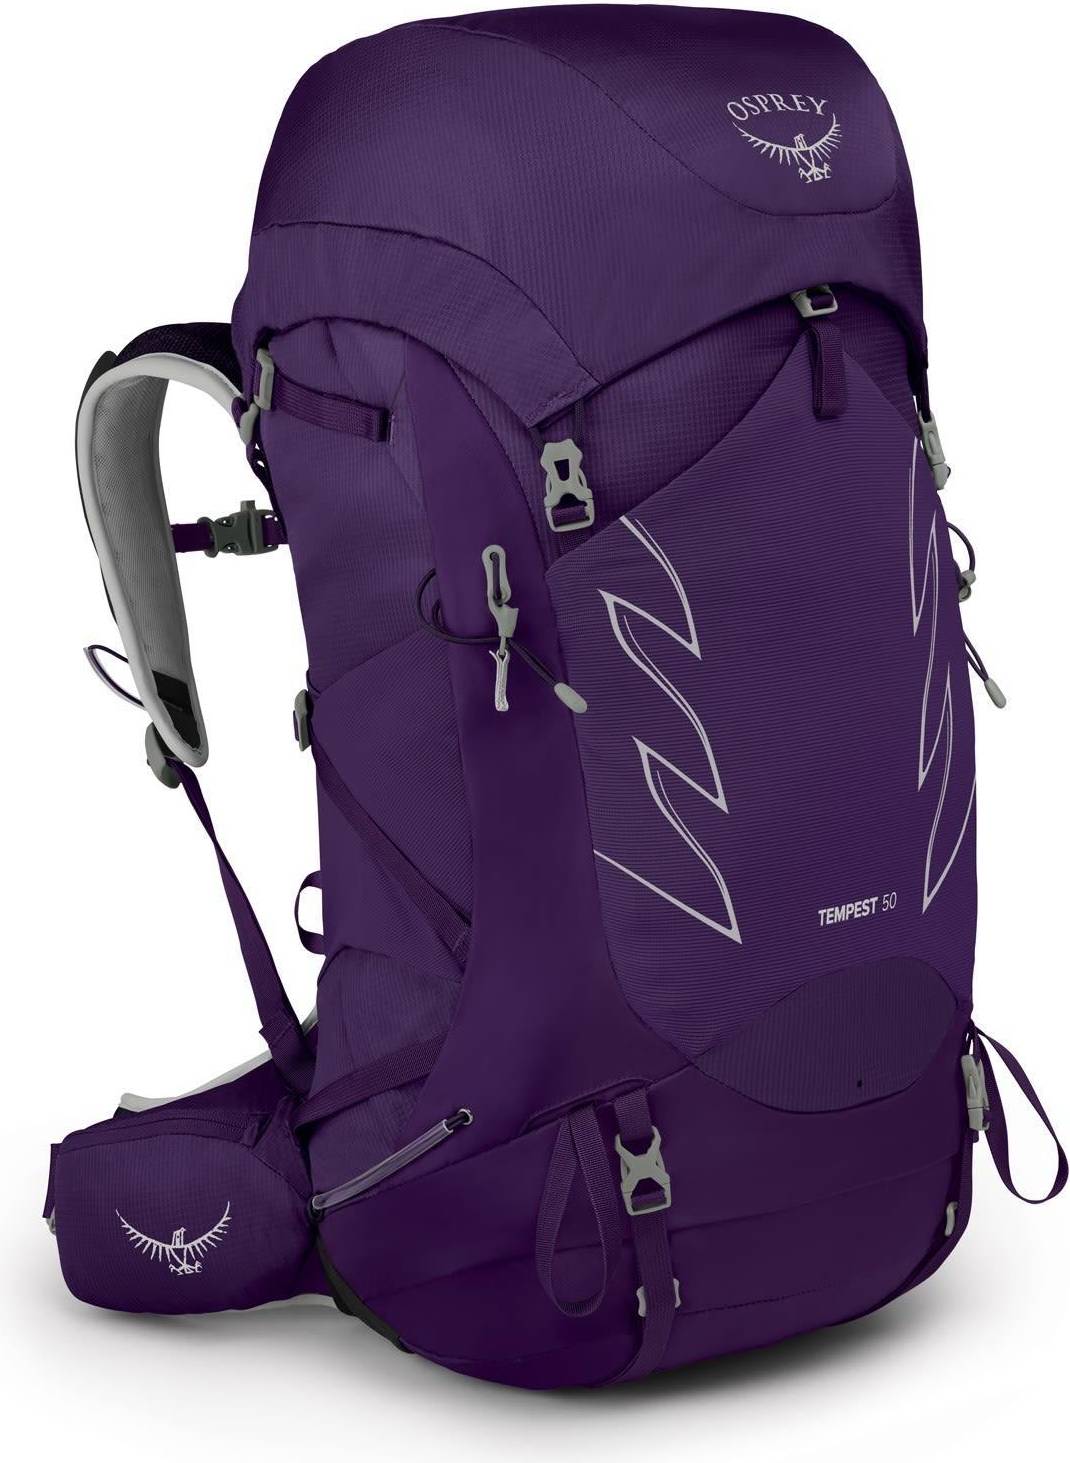  Bild på Osprey Tempest 50 XS/S - Violac Purple ryggsäck